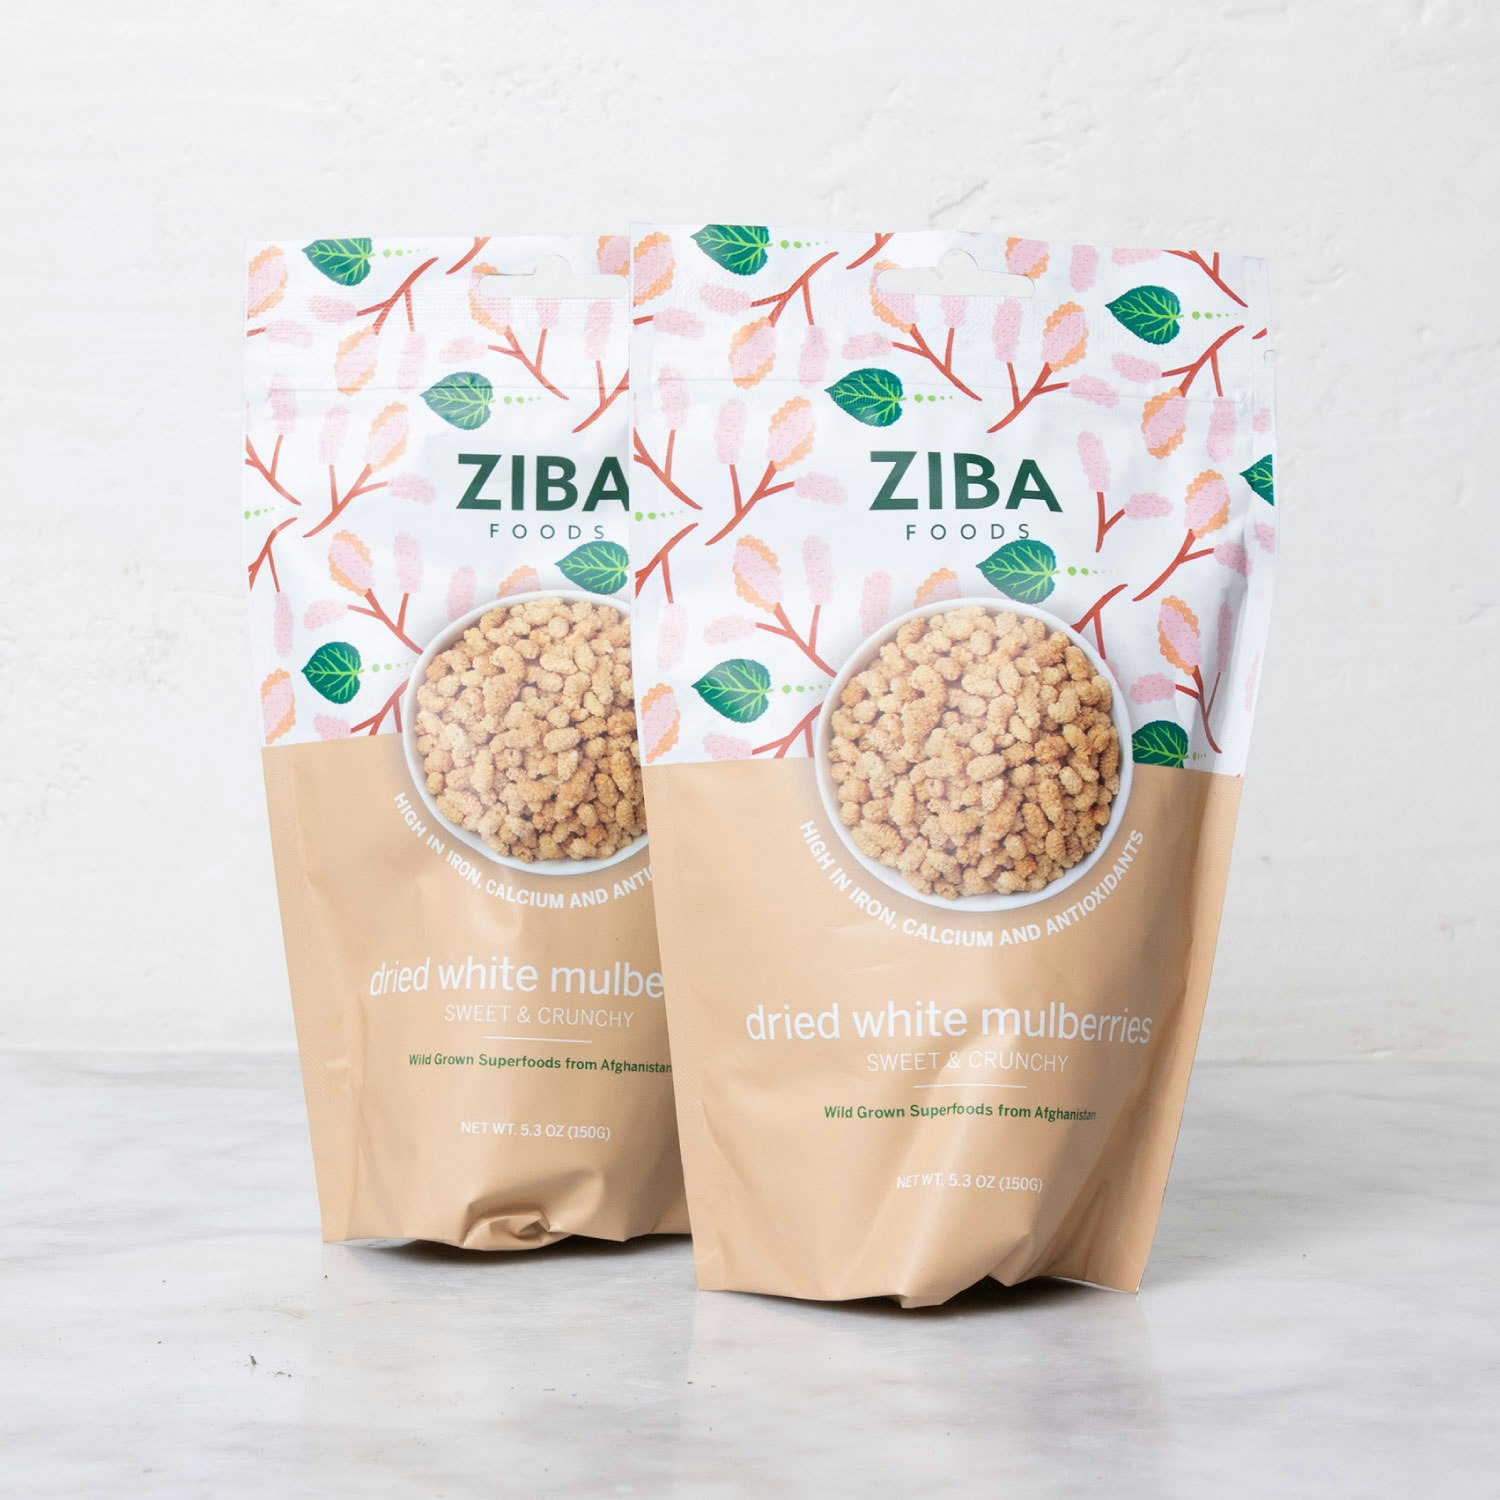 ziba mulberries specialty foods